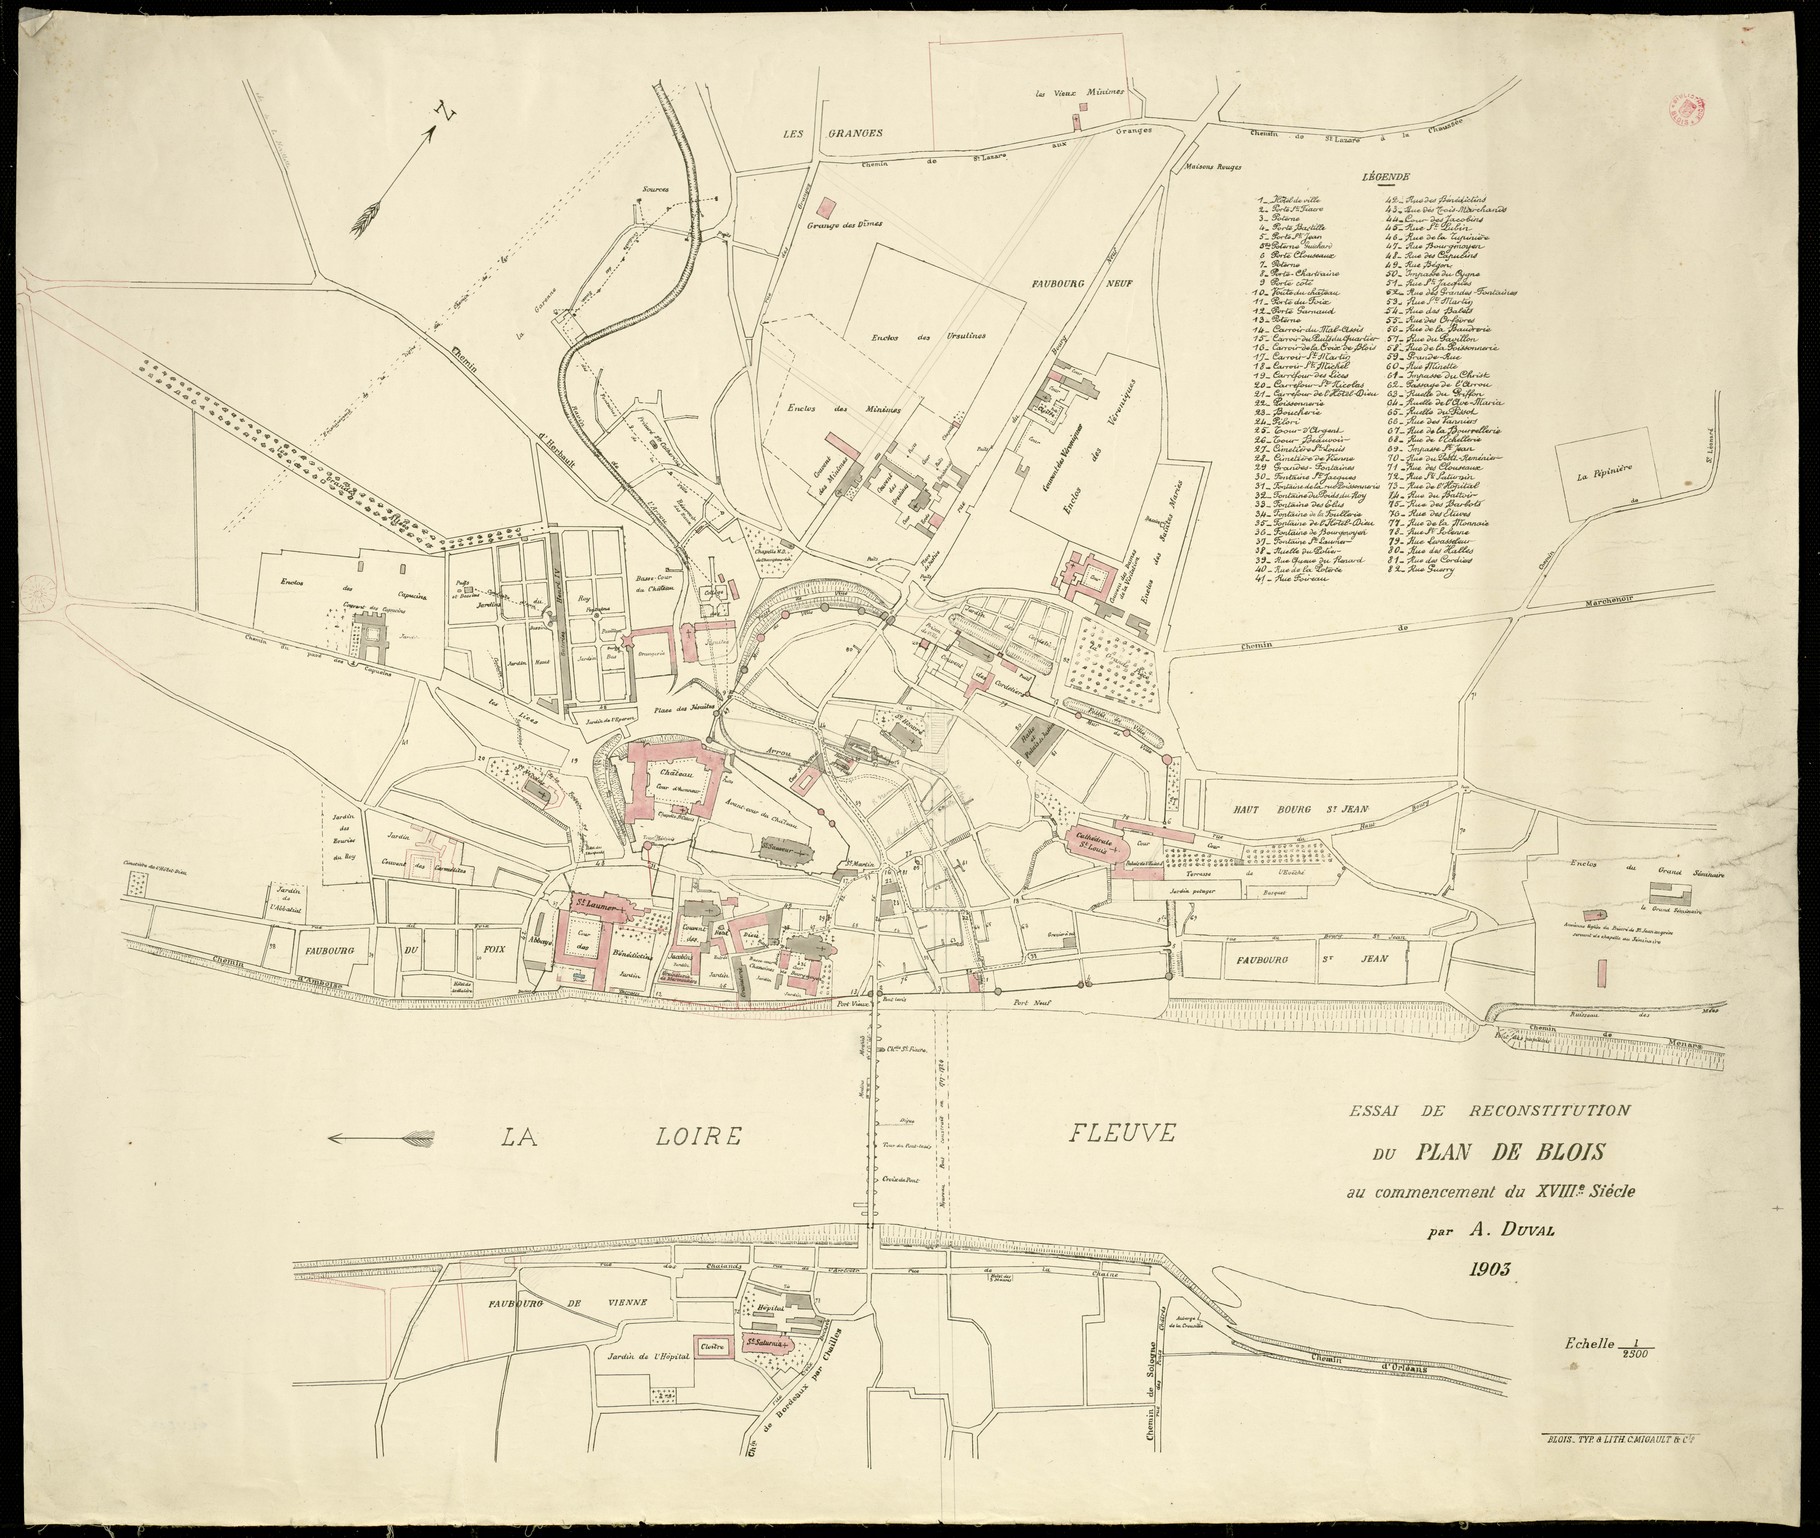 A. Duval, Essai de reconstitution du plan de Blois au commencement du XVIIIe siècle, 1903